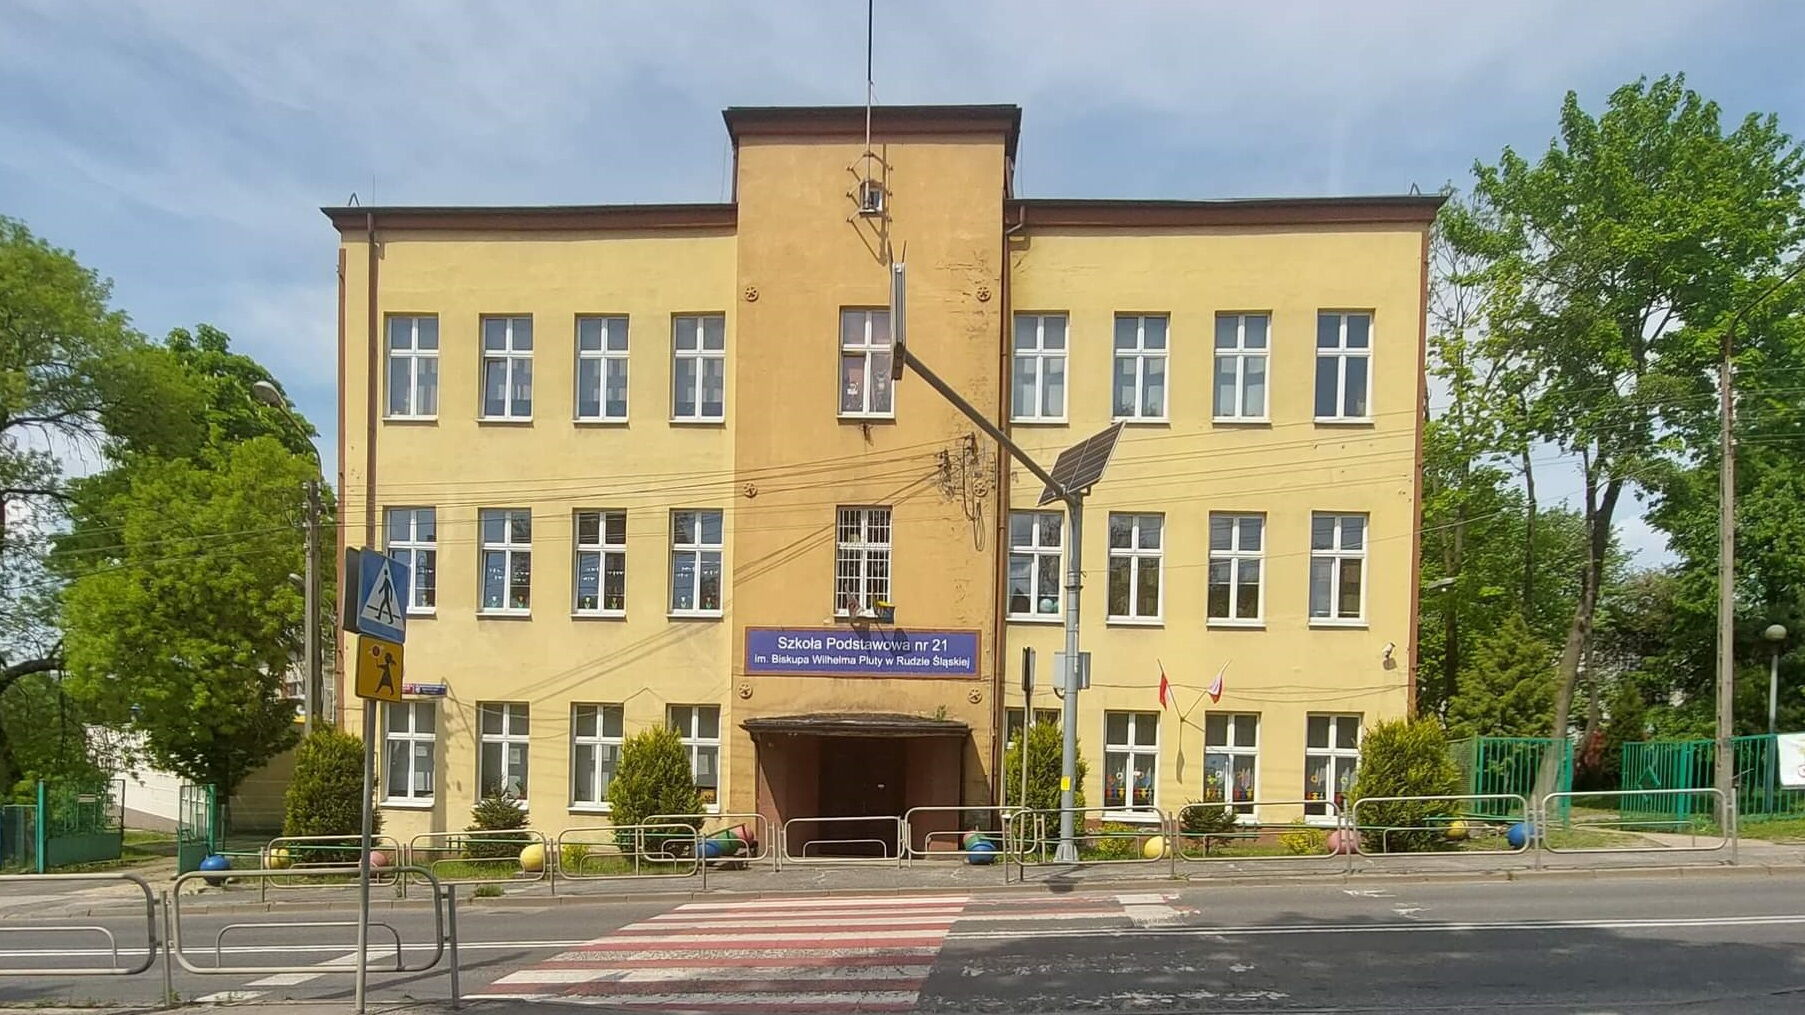 Jezdnia, przejście dla pieszych, budynek z napisem "Szkoła Podstawowa nr 21 w Rudzie Śląskiej", drzewa.